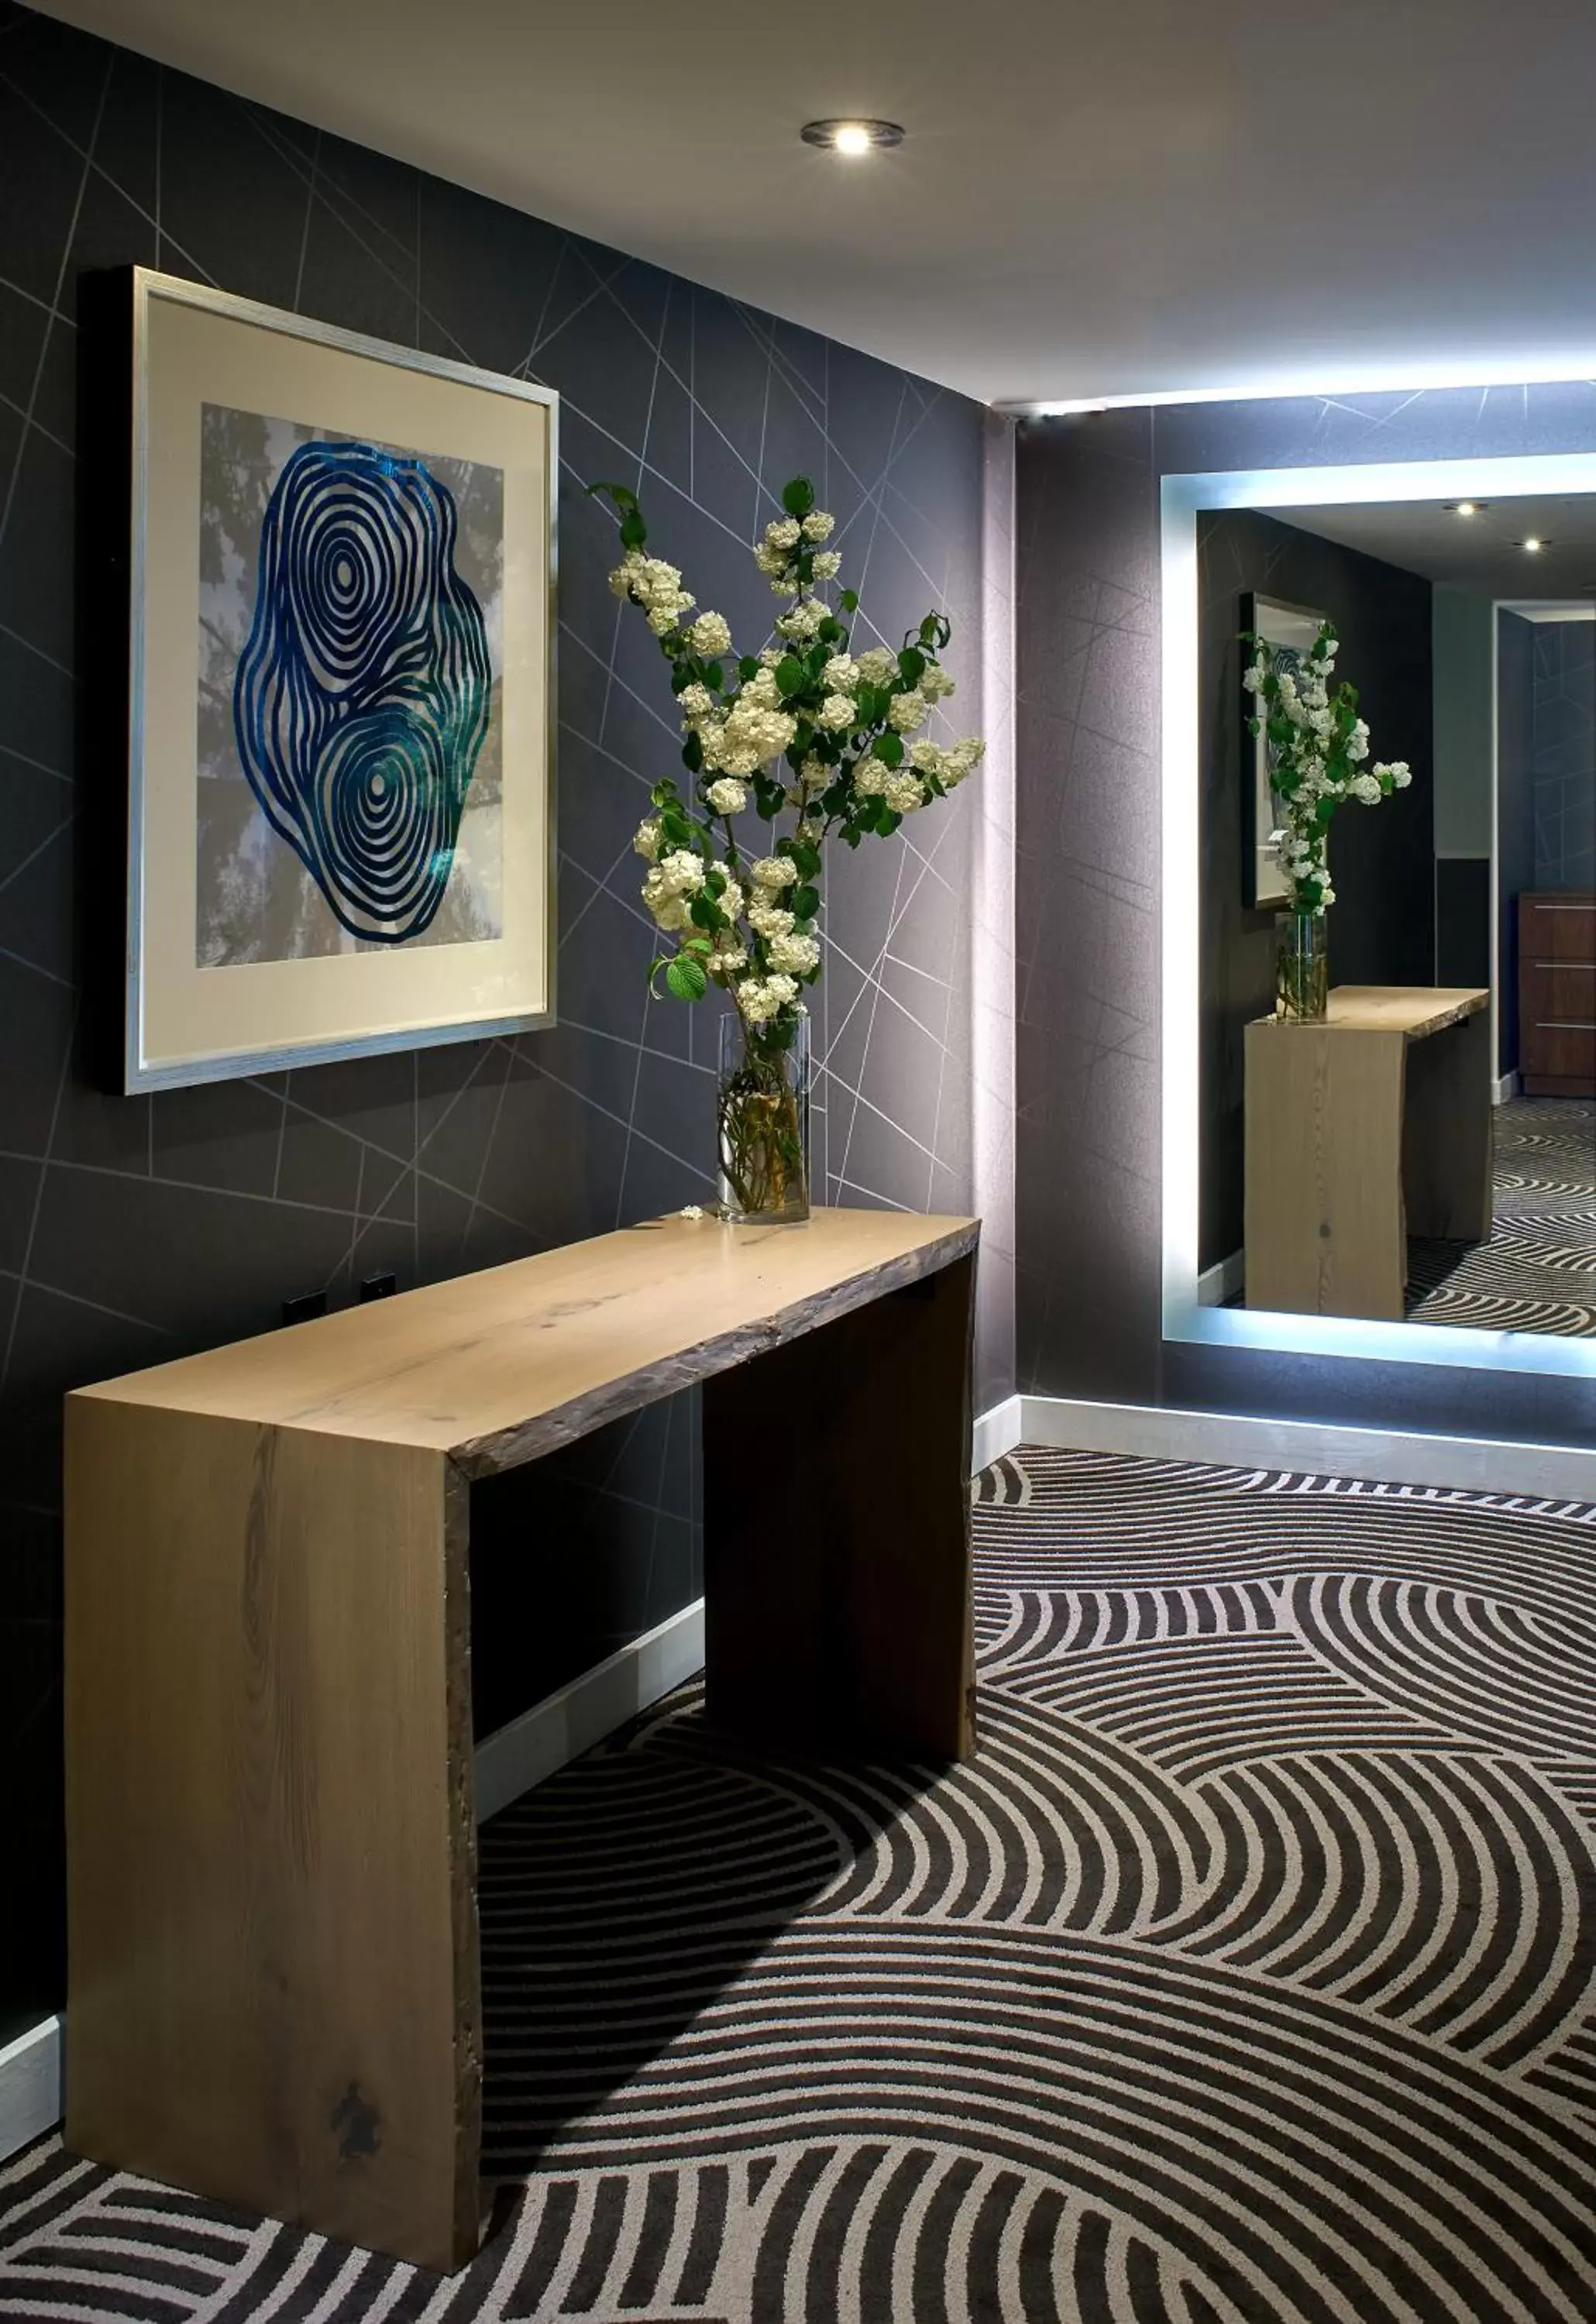 Lobby or reception, Bathroom in The Hotel Zags Portland